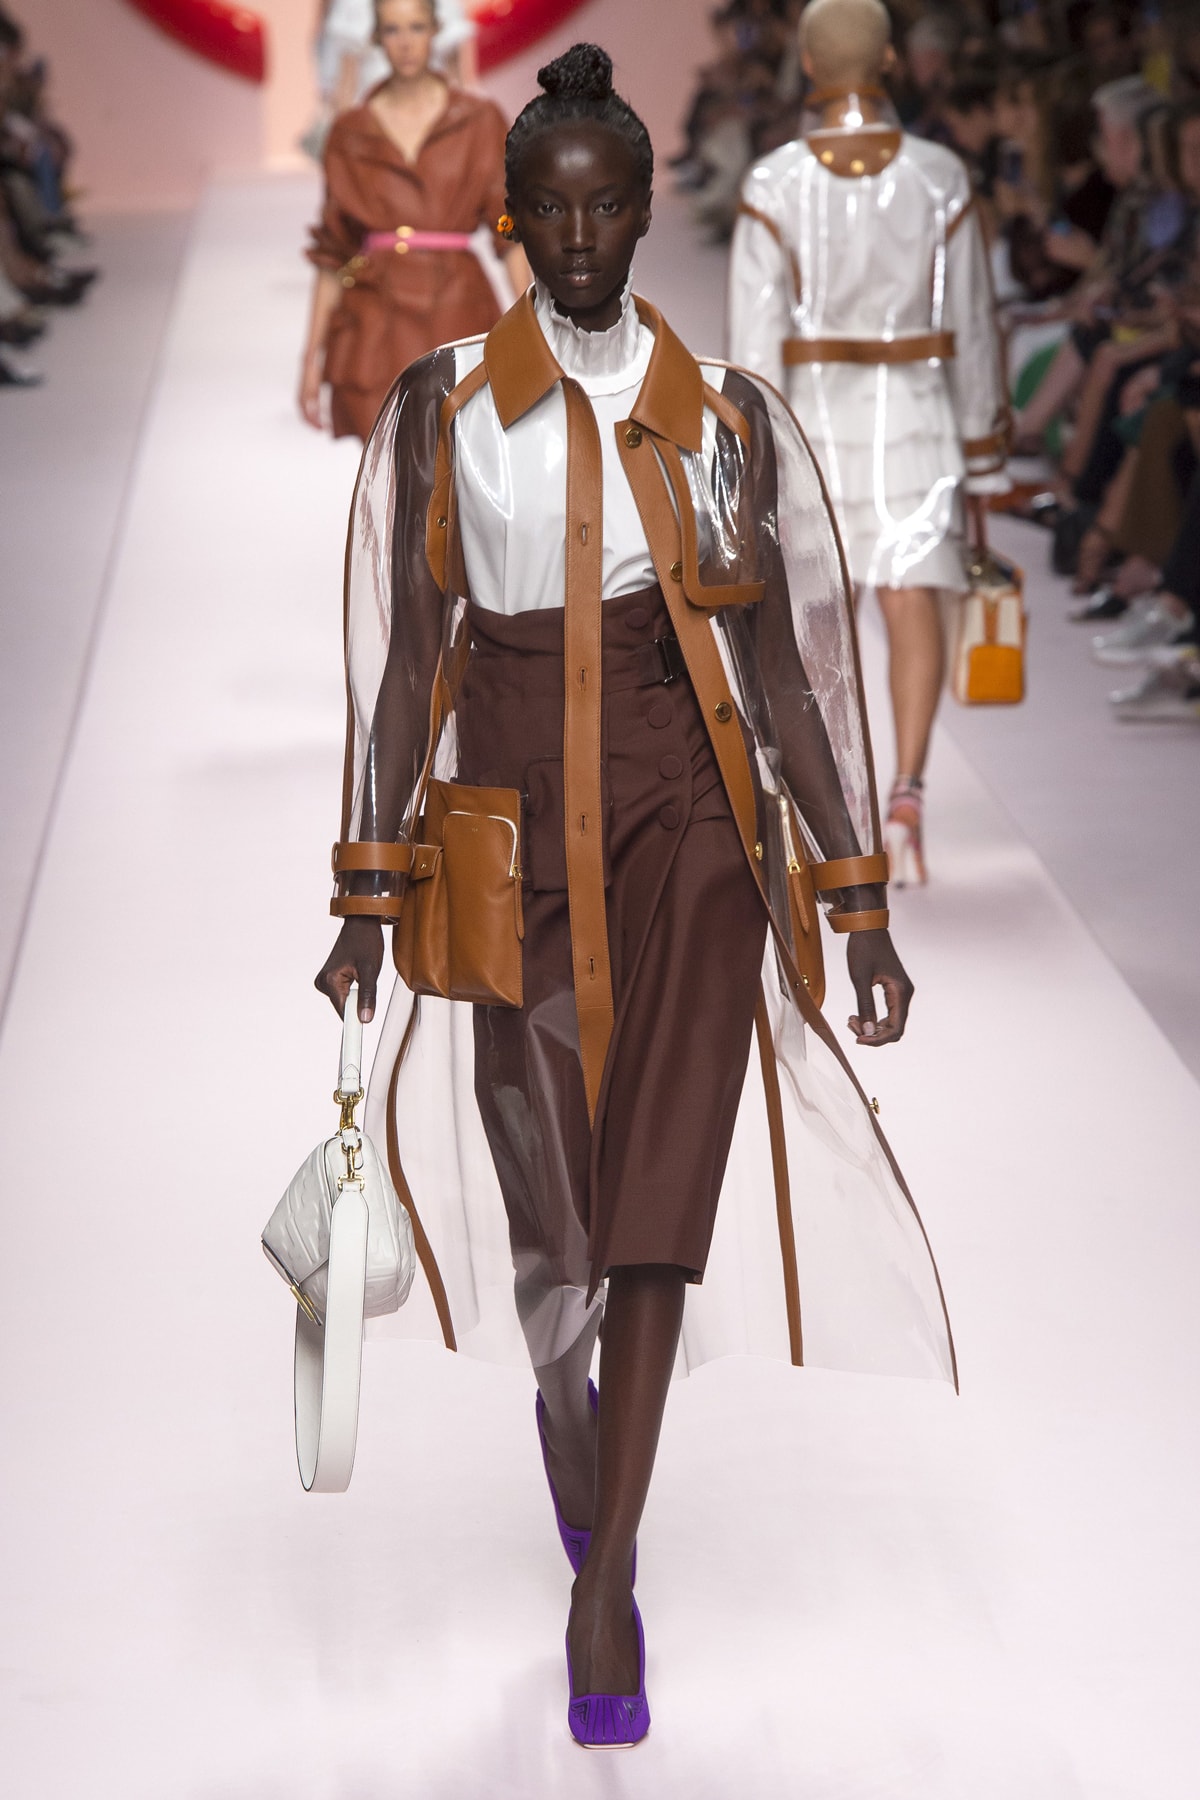 Fendi Karl Lagerfeld Spring Summer 2019 Milan Fashion Week Show Collection Jacket Skirt Brown